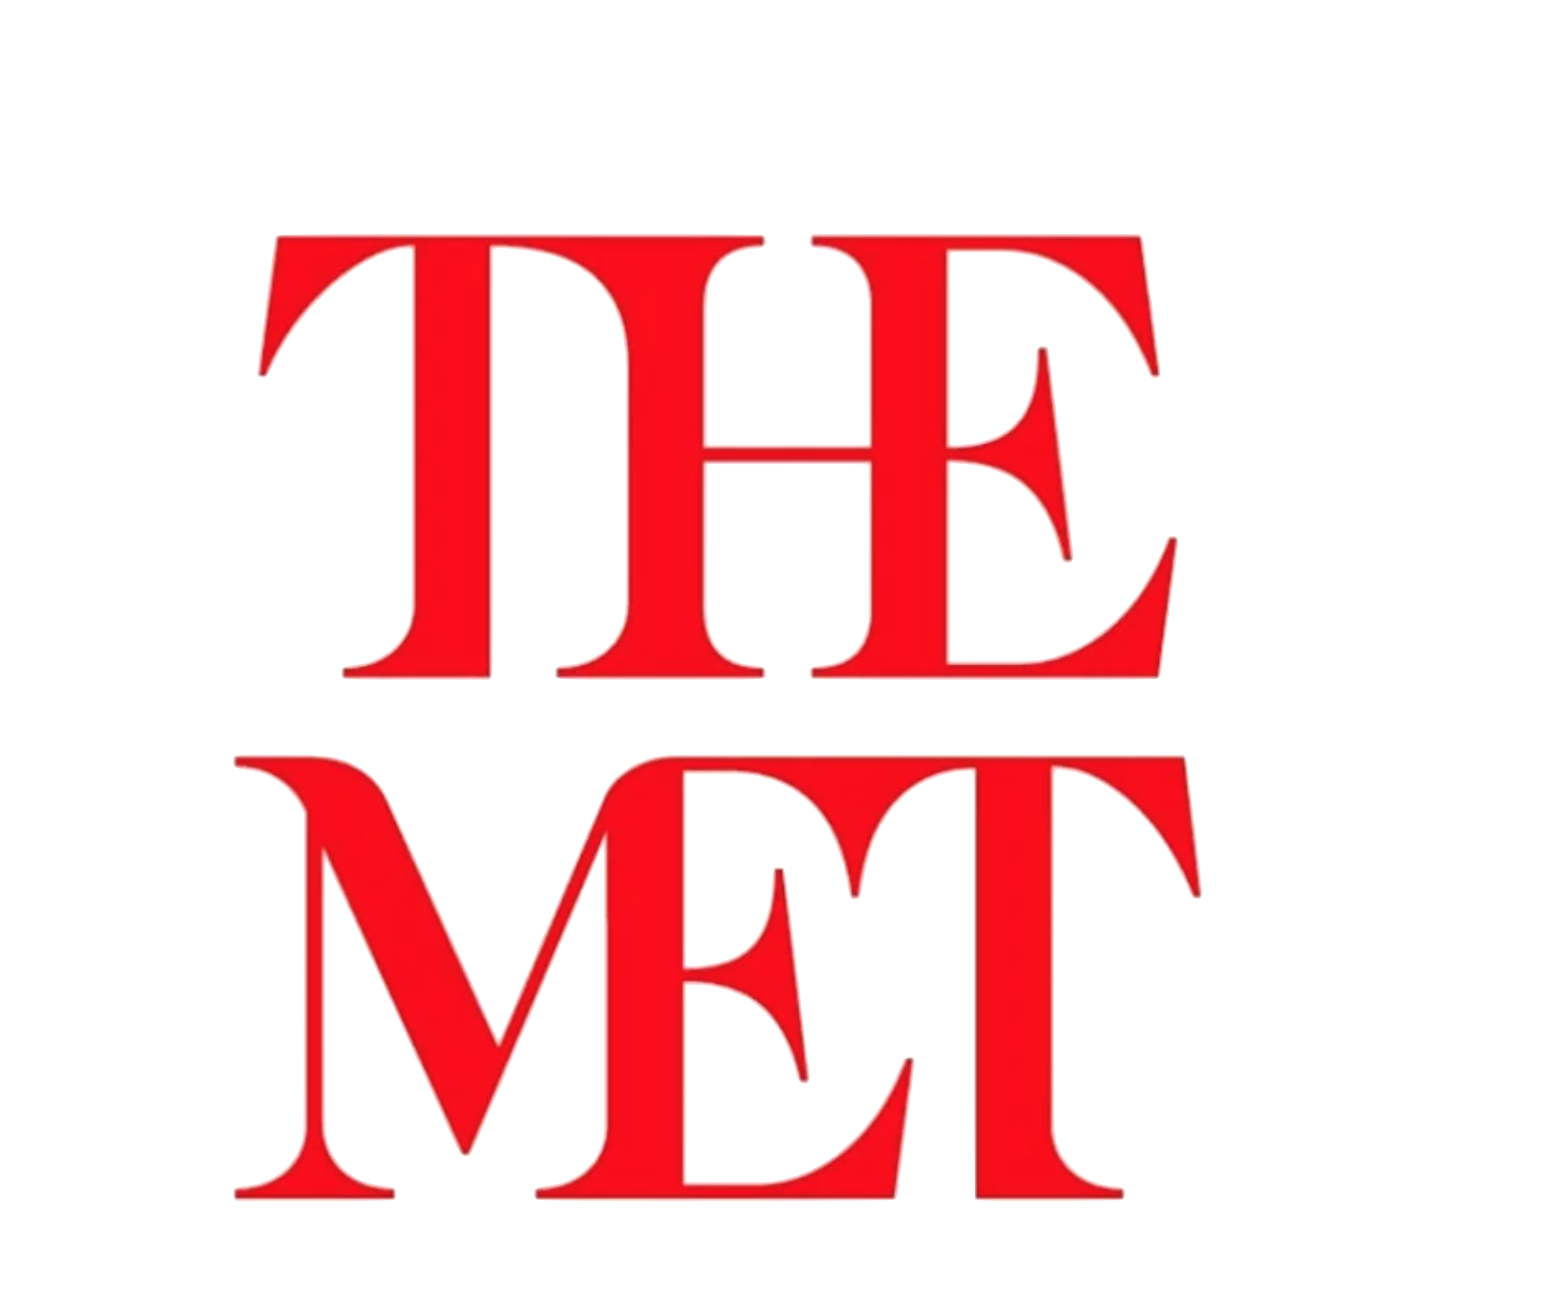 the met logo